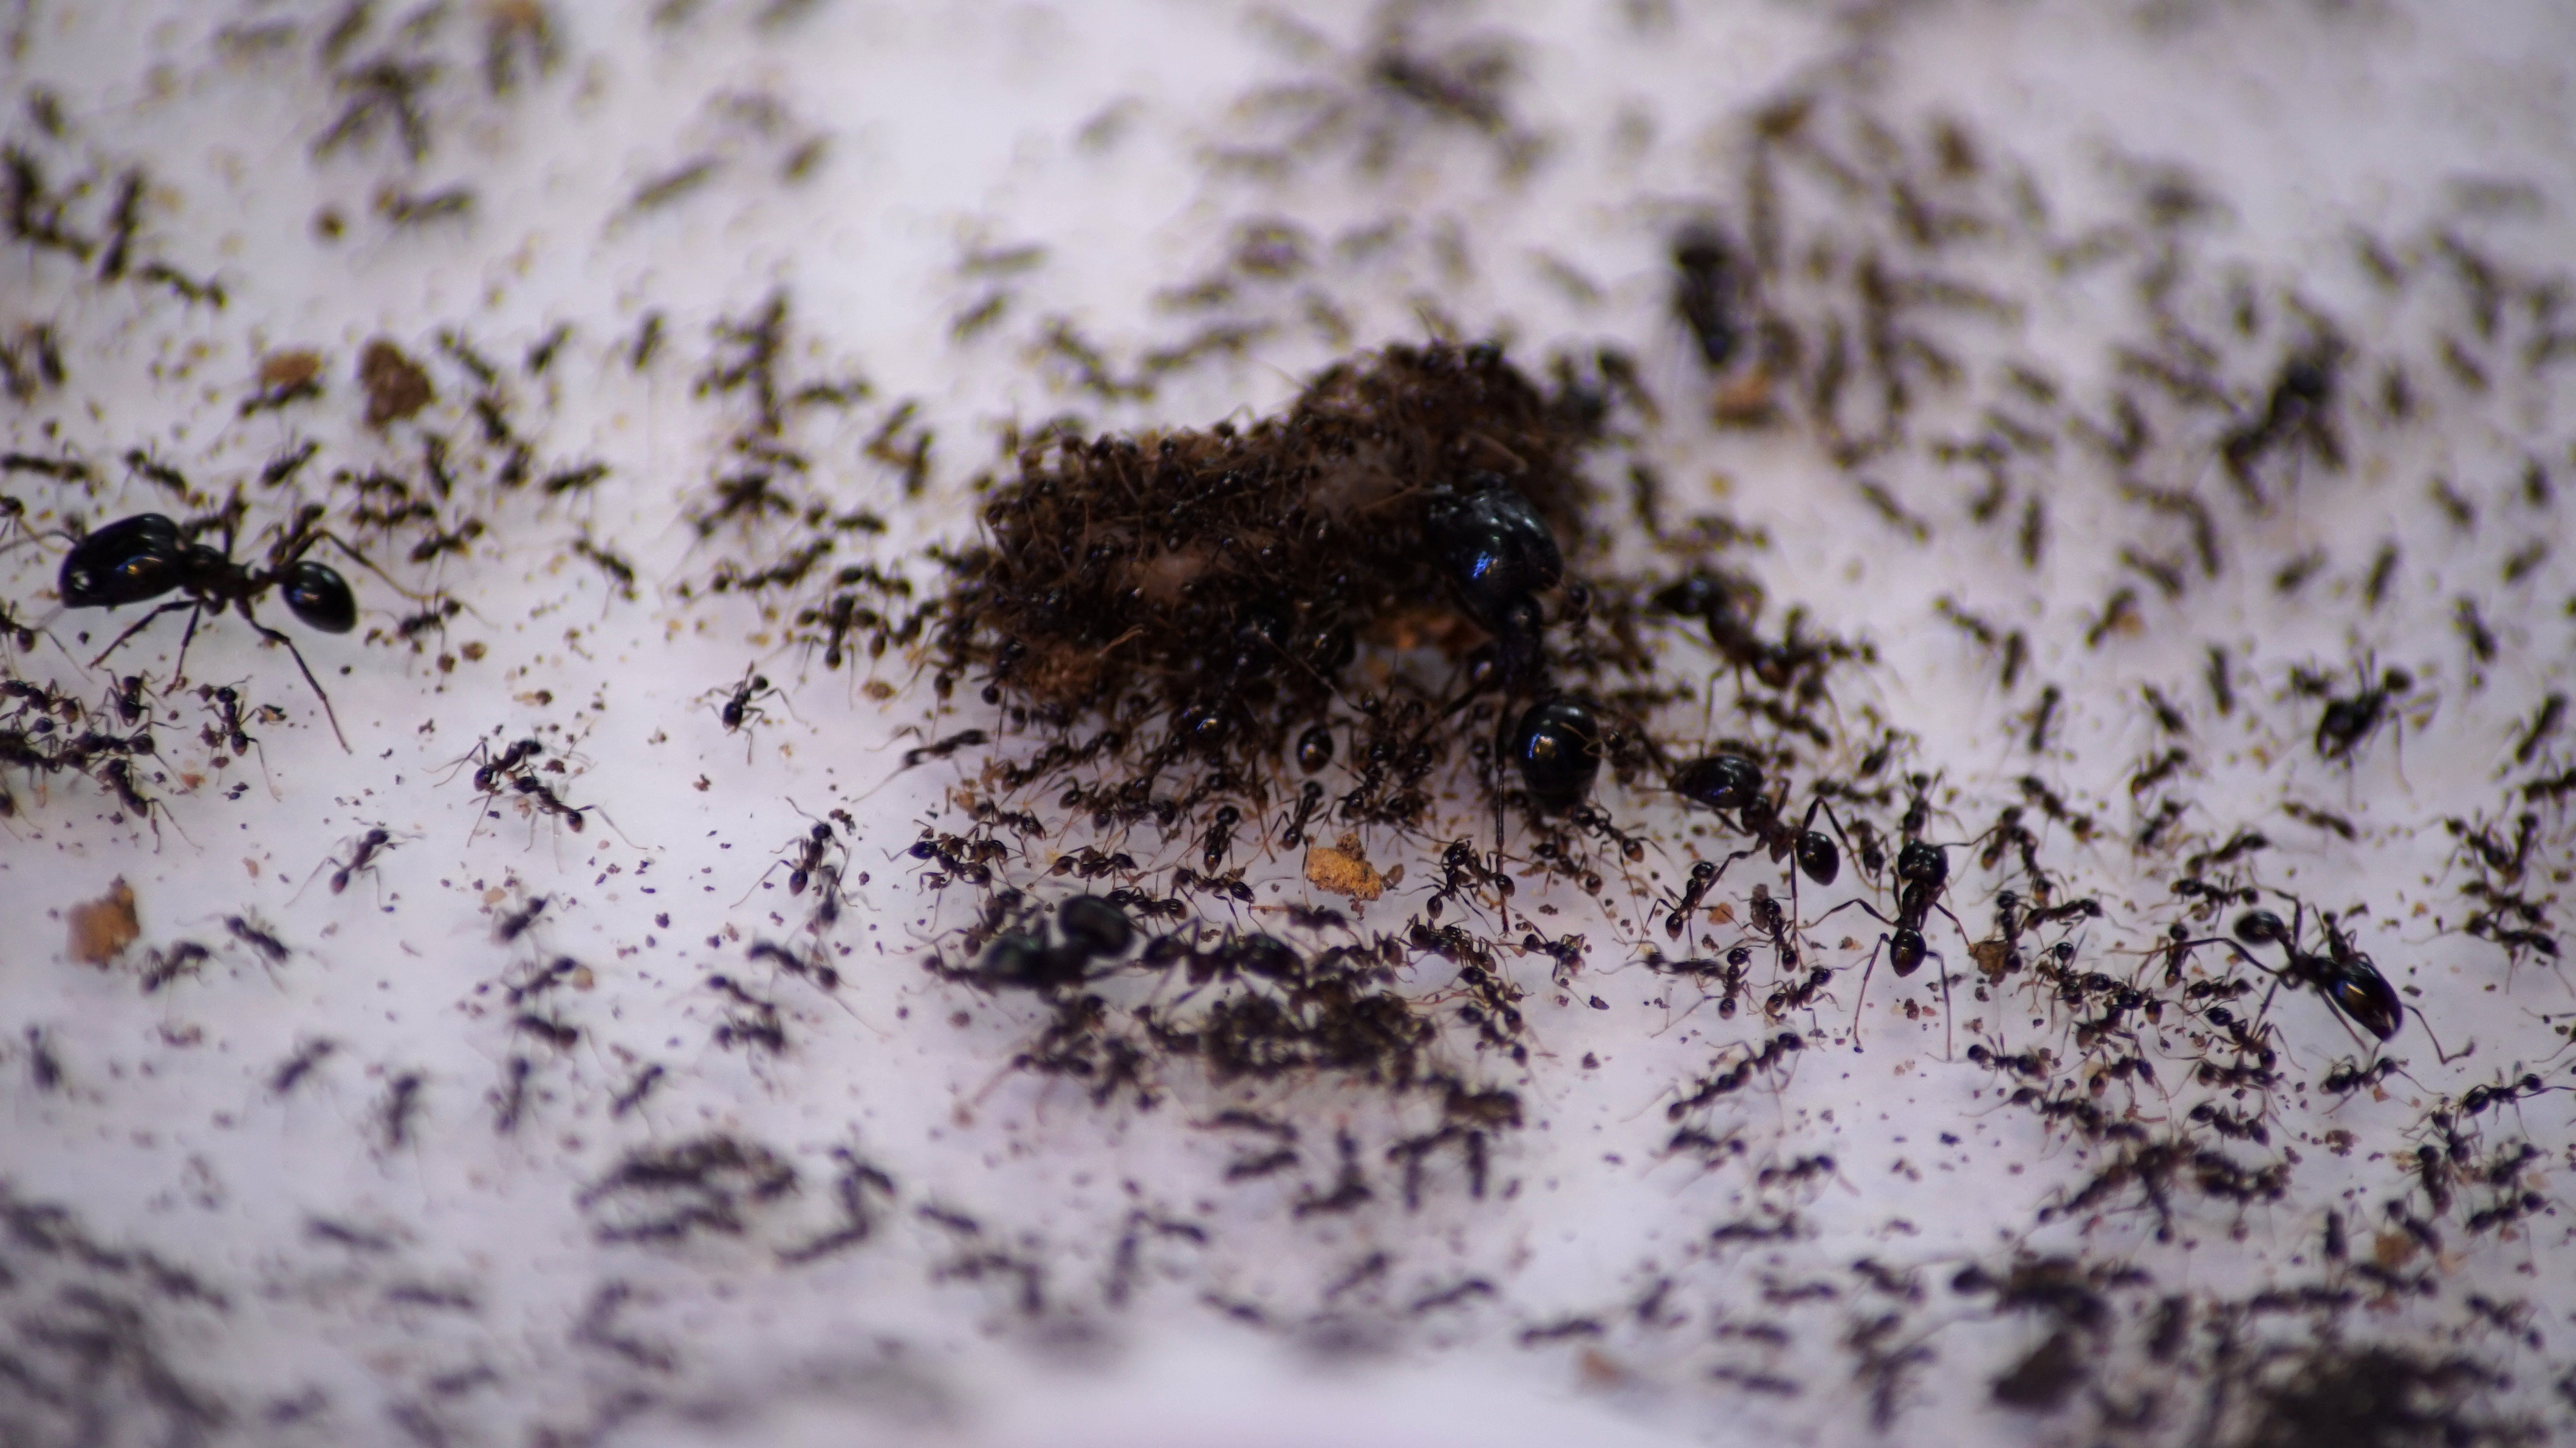 Las hormigas parásitas no son raras. Unas 400 especies de hormigas viven discretamente y sin sufrir daños dentro de los nidos de otras hormigas, normalmente de especies diferentes, y dependen de las obreras que las mantienen a ellas y a sus crías seguras y bien alimentadas (REUTERS)